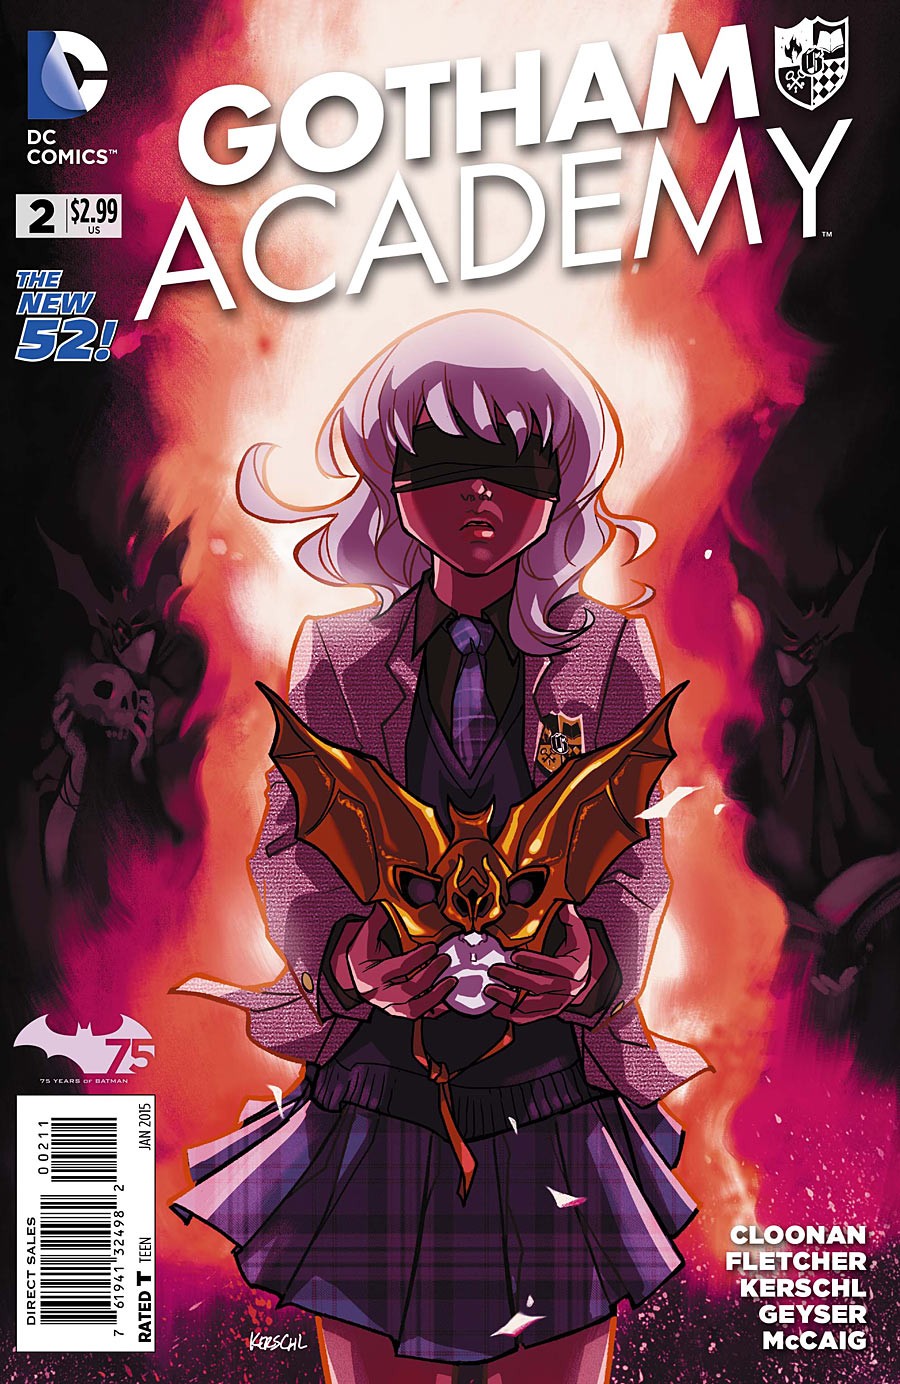 Gotham Academy Vol. 1 #2